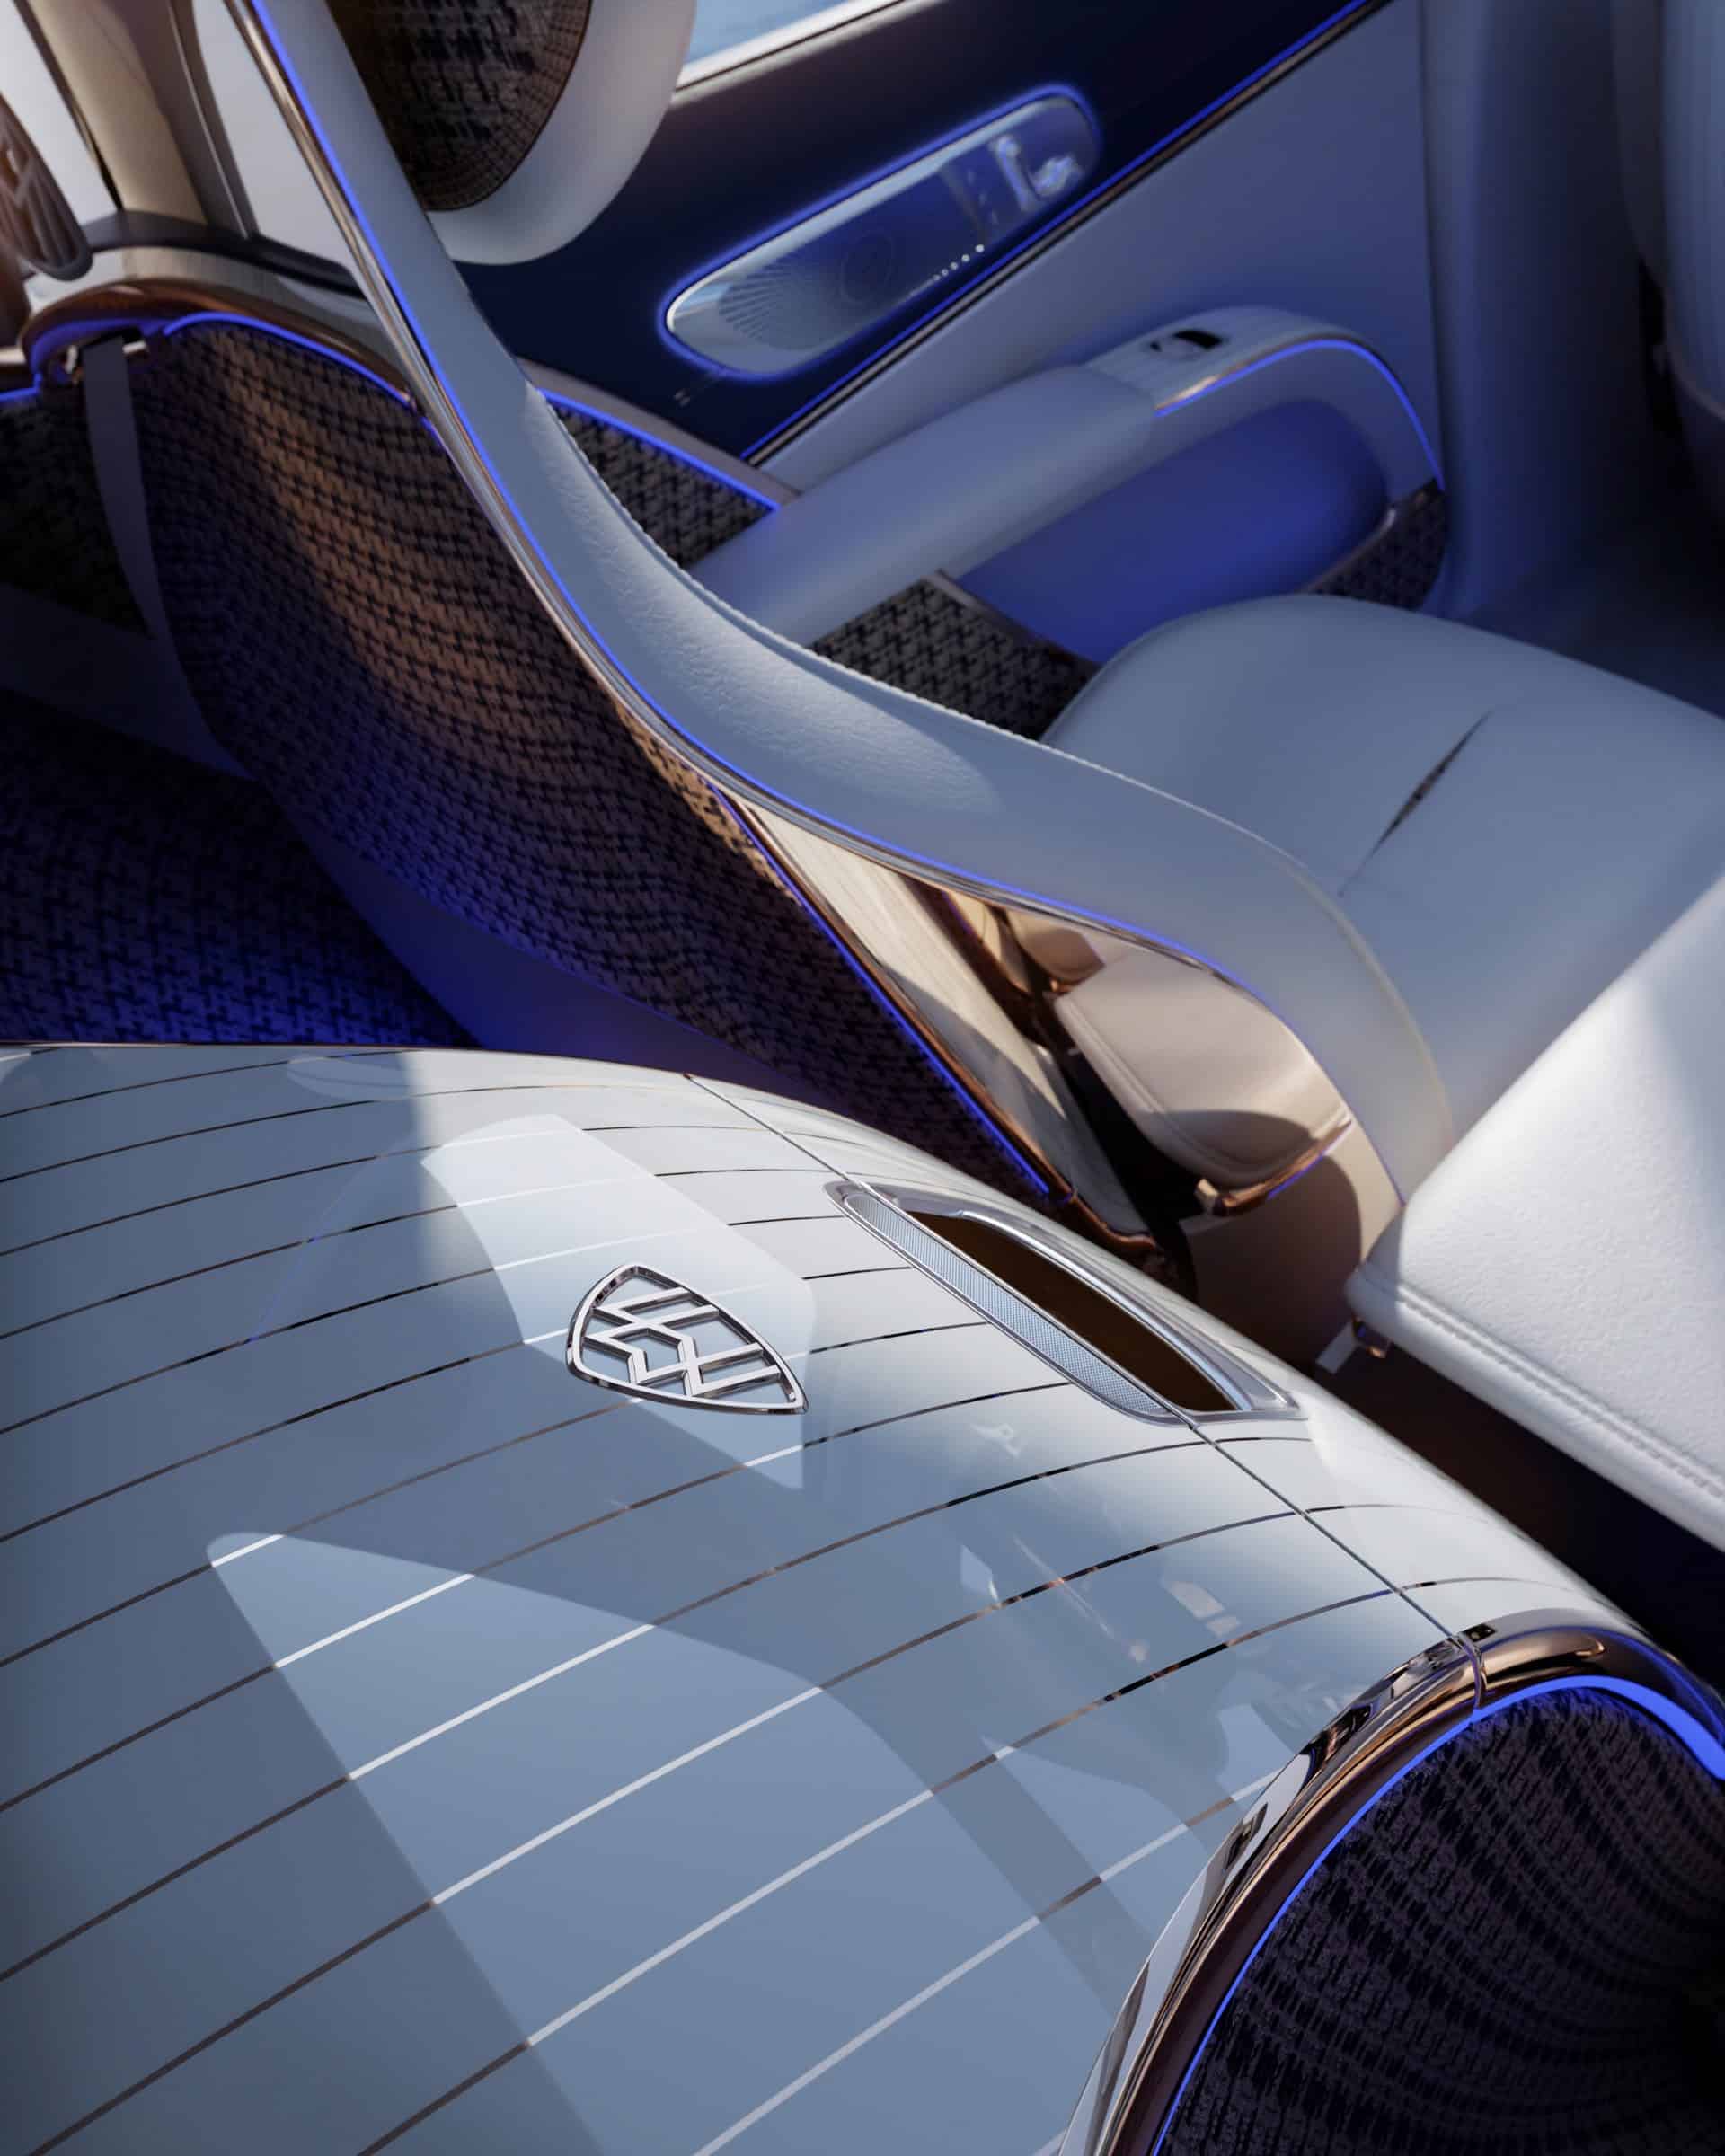 Mercedes-Maybach EQS SUV Concept - SUV siêu sang chạy điện cho tương lai mercedes-maybach-eqs-suv-concept-211.jpeg